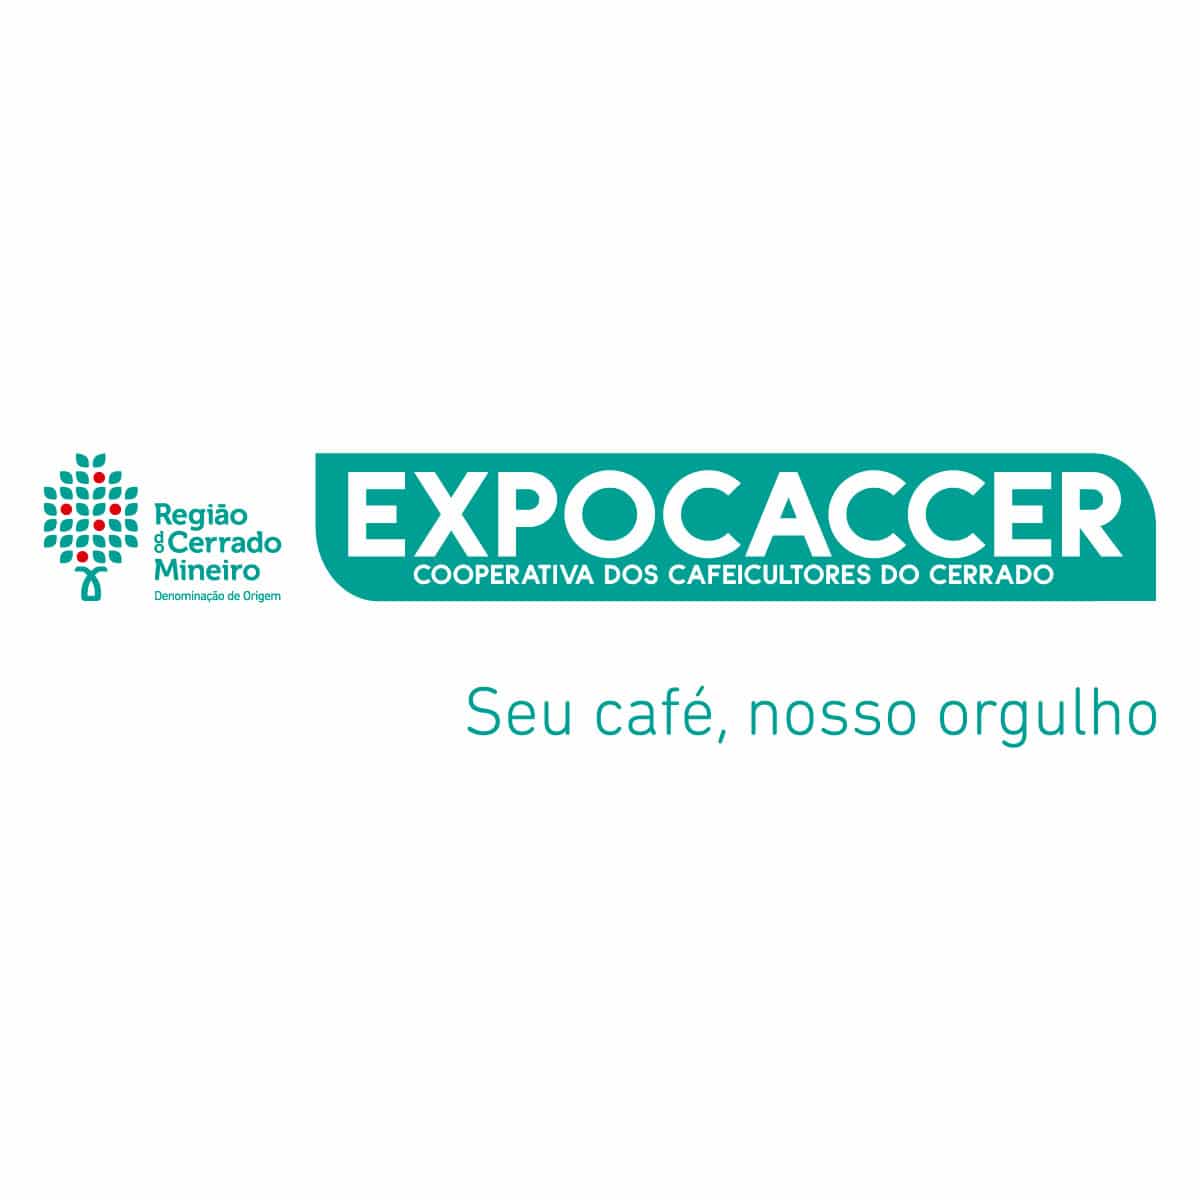 Célio Rafael Martins Júnior - Coordenador de TI - Expocaccer - Cooperativa  dos Cafeicultores do Cerrado